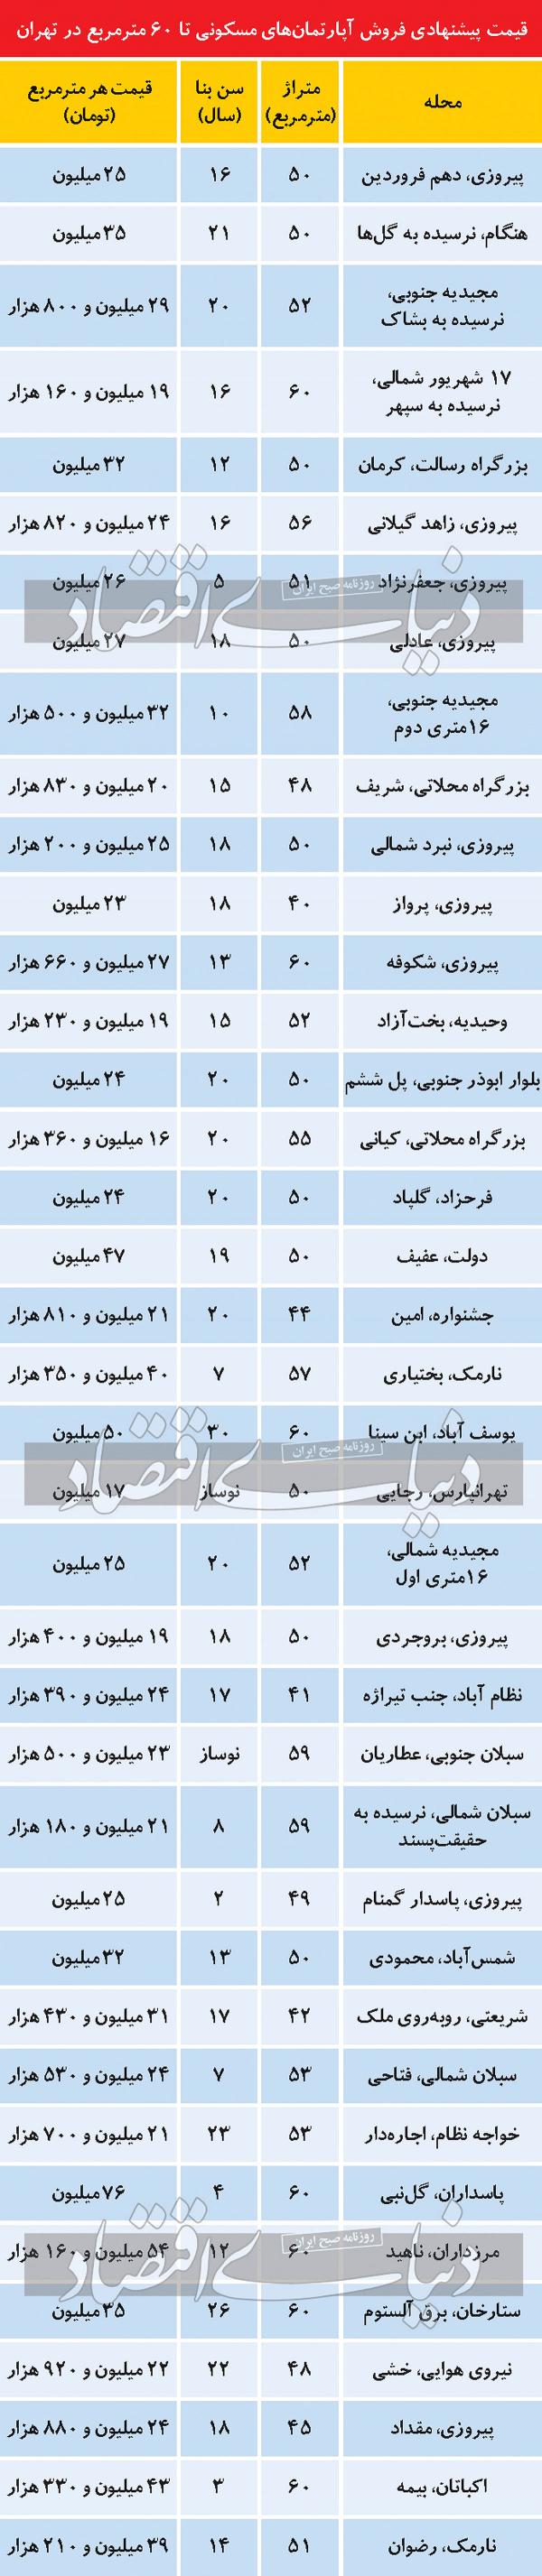 قیمت آپارتمان تهران,| قیمت آپارتمانی نقلی تا 60 مترمربع در تهران